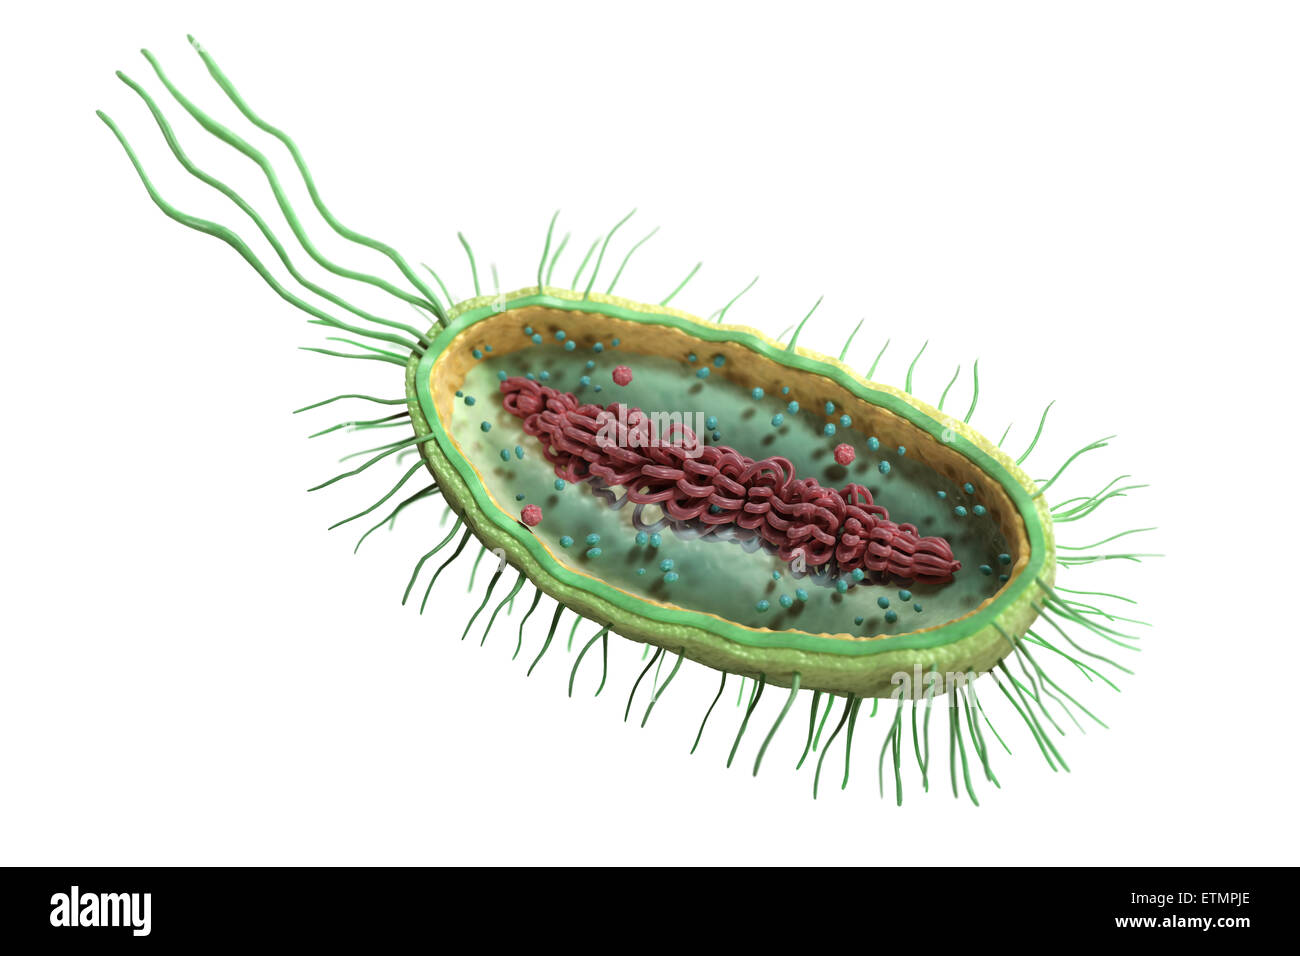 Ilustración de la sección transversal de una bacteria, mostrando la estructura interna. Foto de stock